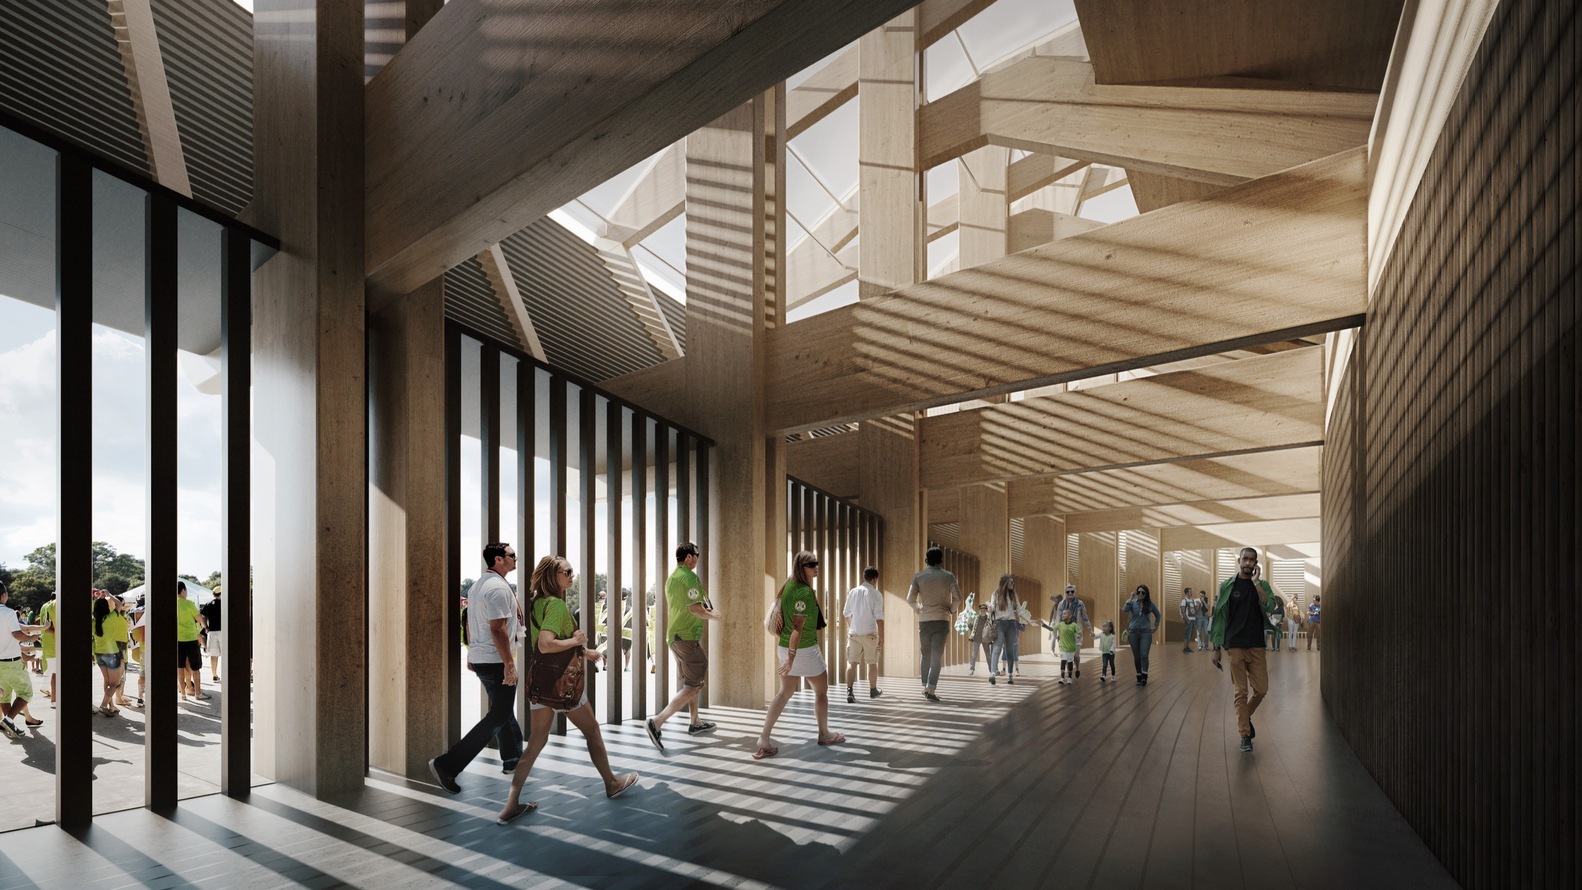 zaha hadid estadio sostenible La firma de Zaha Hadid diseña el primer estadio de fútbol sostenible y verde del mundo